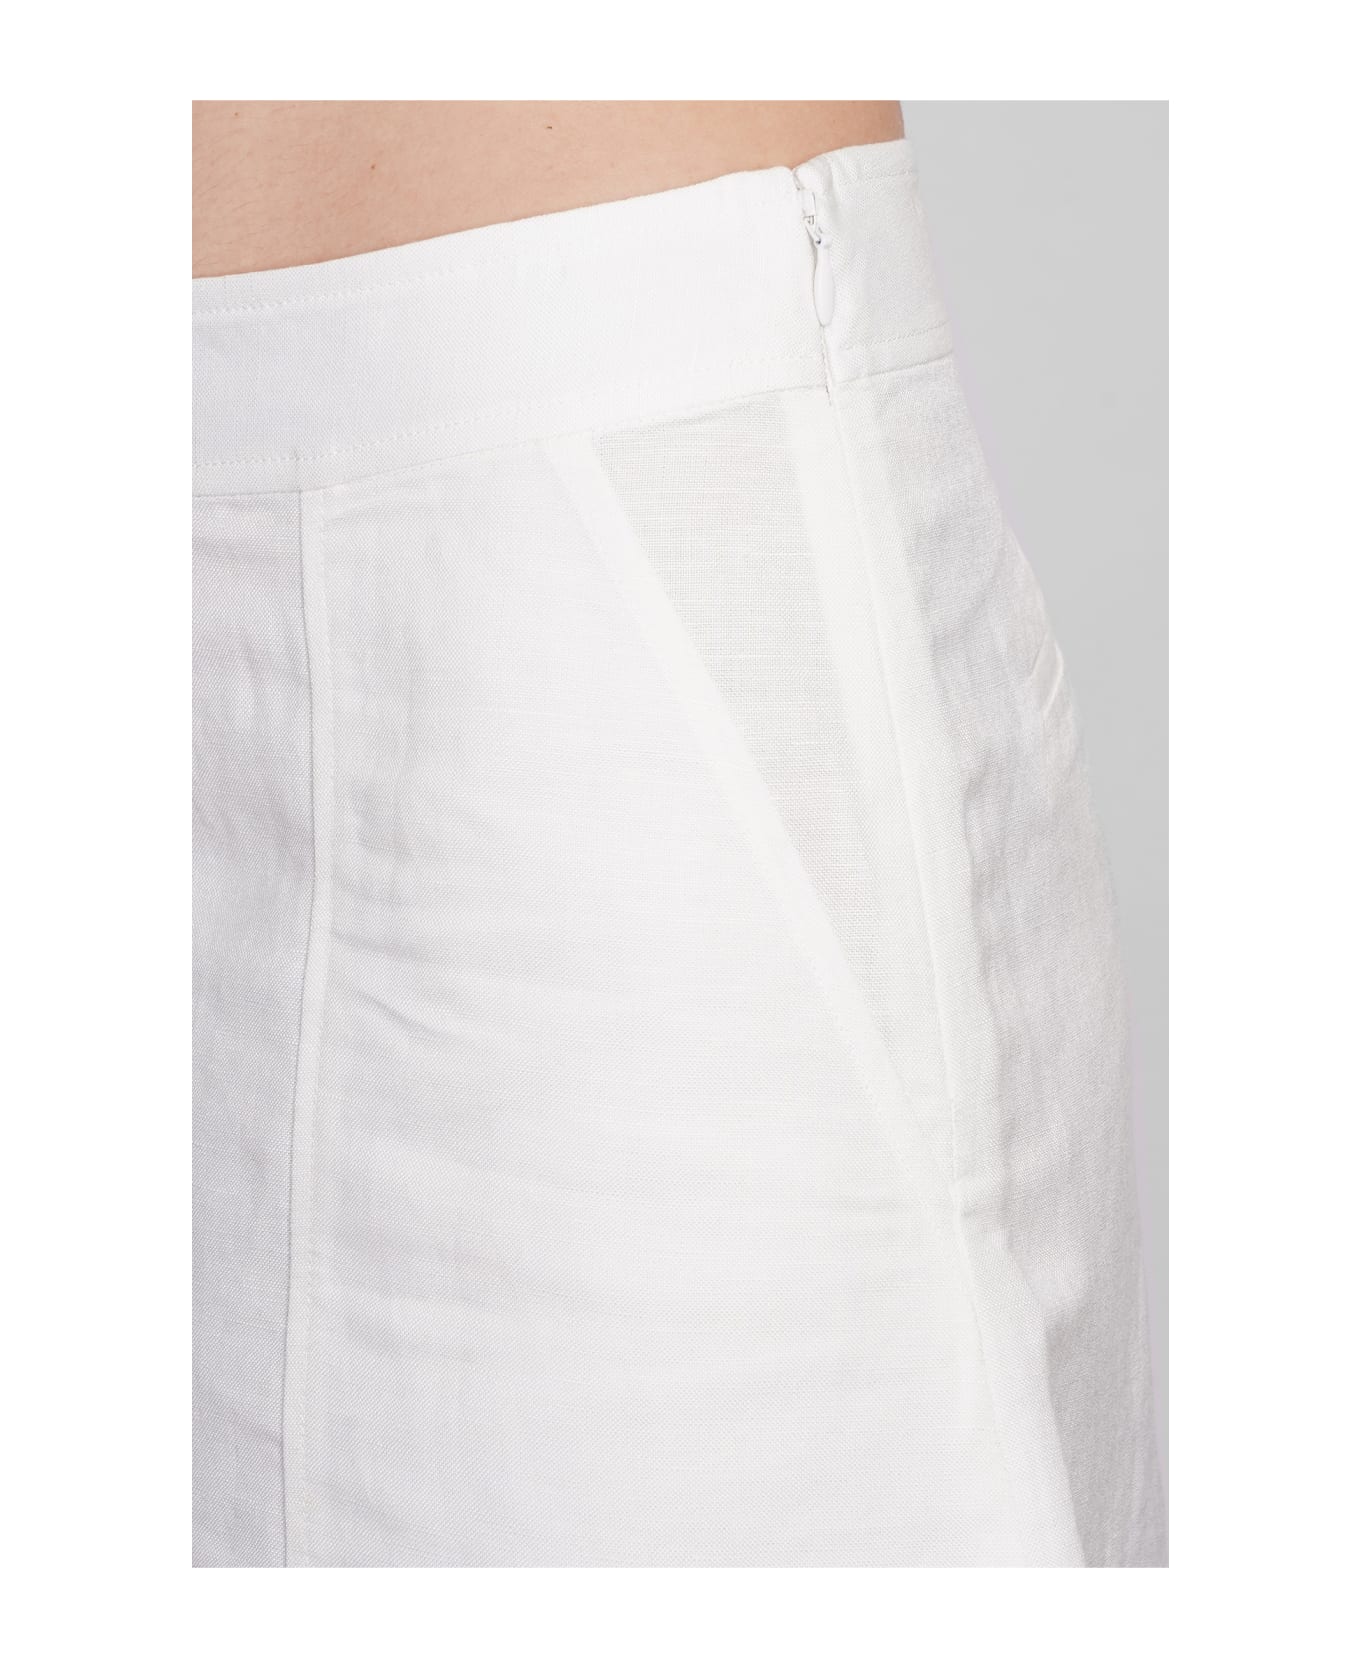 Simkhai Dax Shorts In White Linen - white